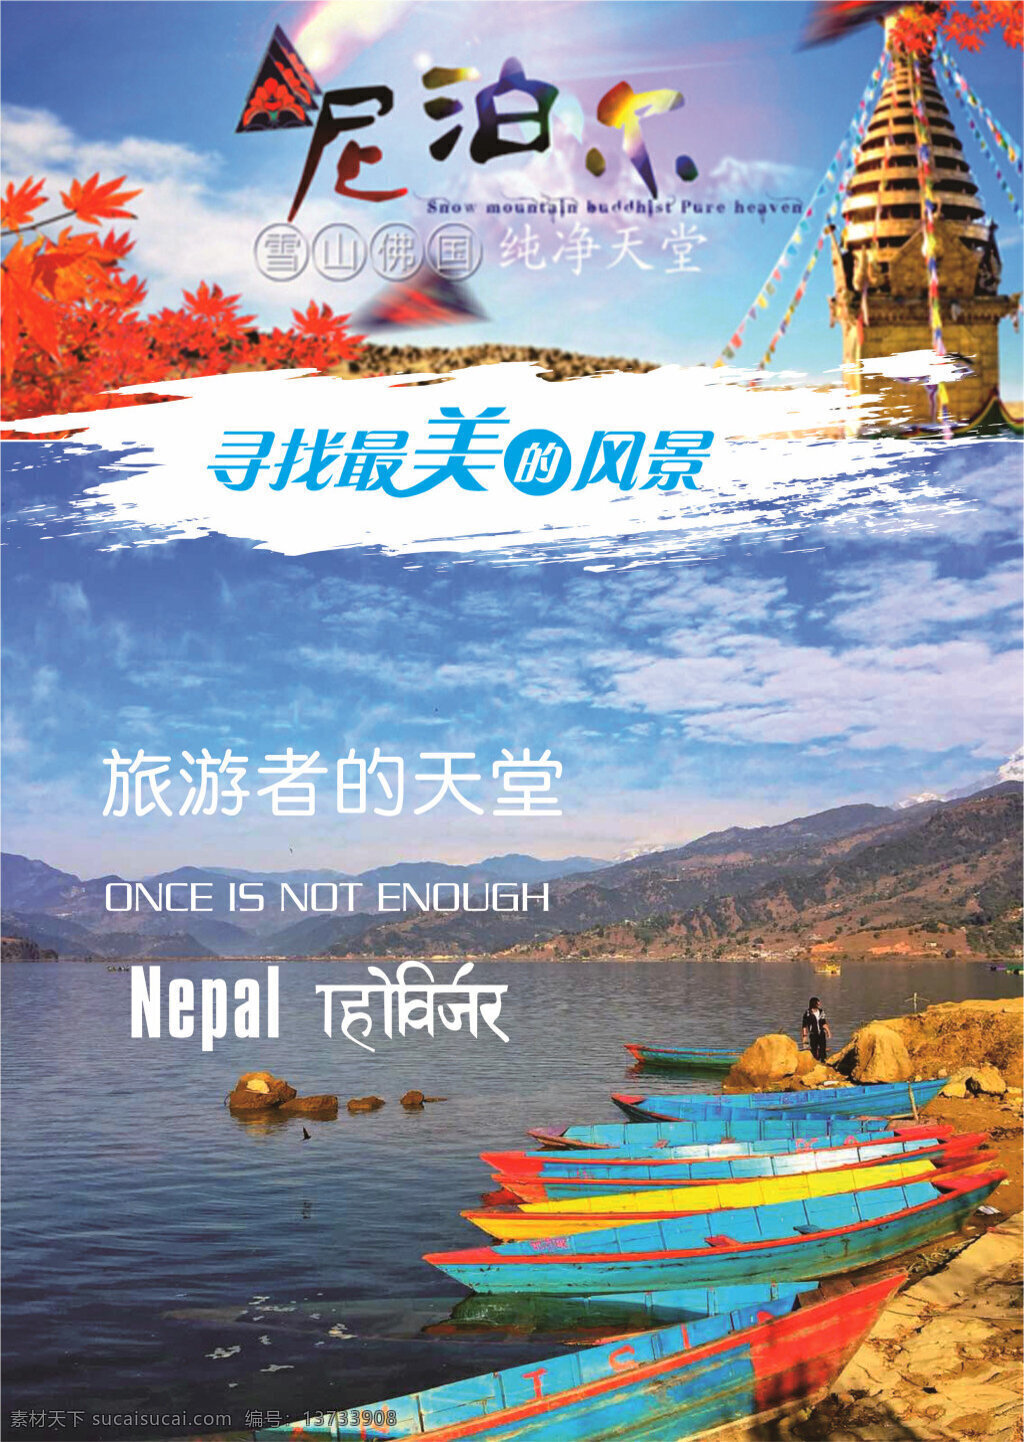 尼泊尔5.6 尼泊尔 雪山 美景 旅游 海报 白色